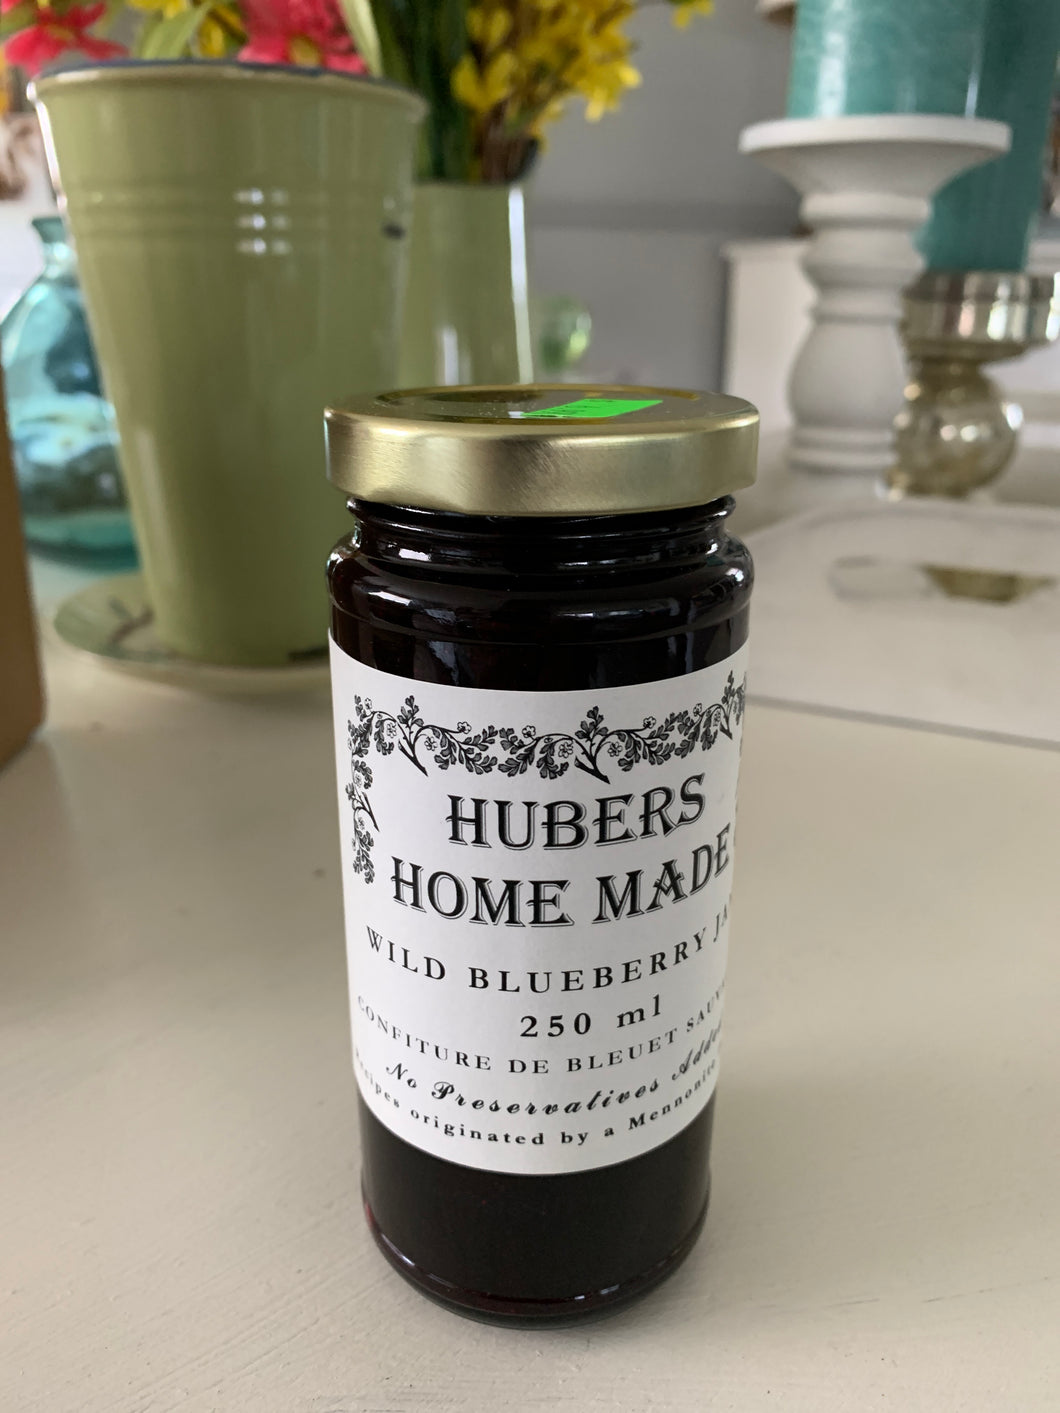 Home Made Wild Blueberry Jam